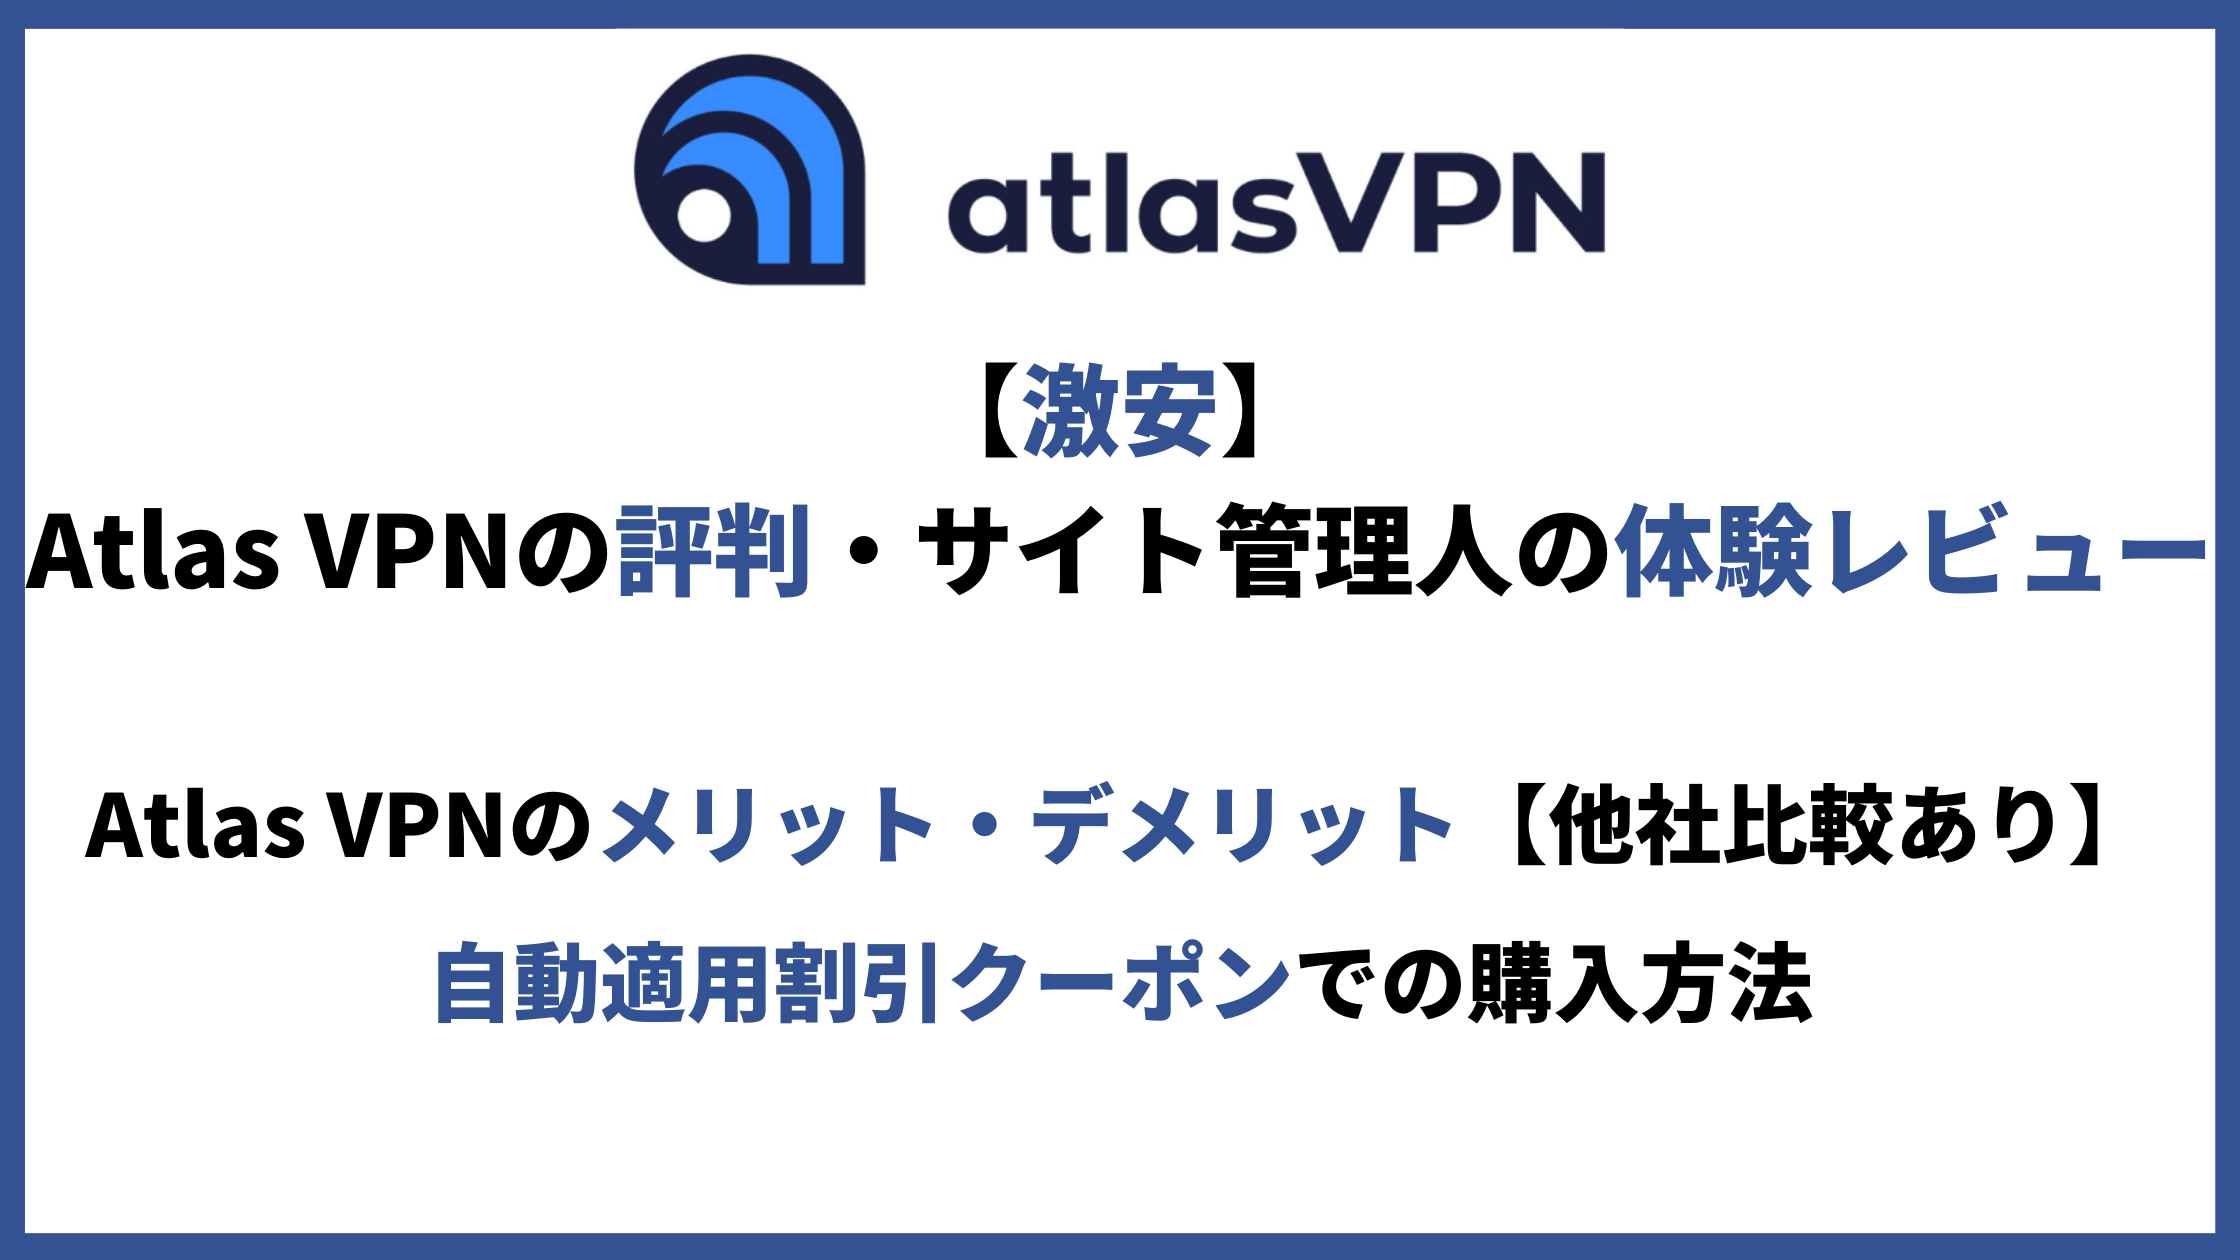 Atlas VPN評判アイキャッチ